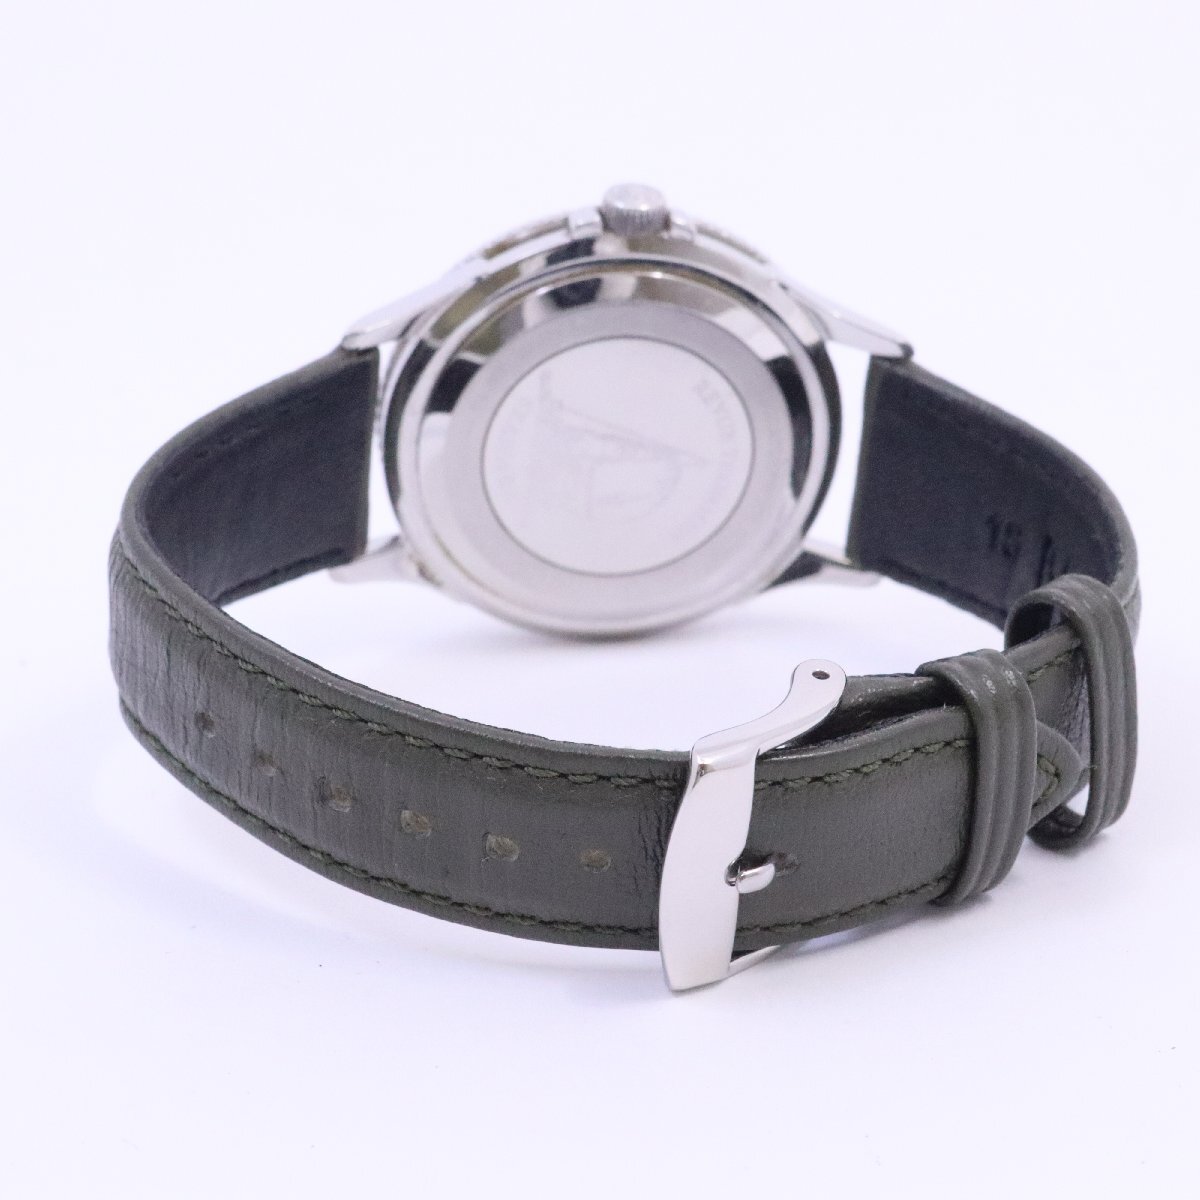  Revue Thommen Cima -k кварц мужские наручные часы белый × зеленый циферблат неоригинальный ремень 5811005[... ломбард ]